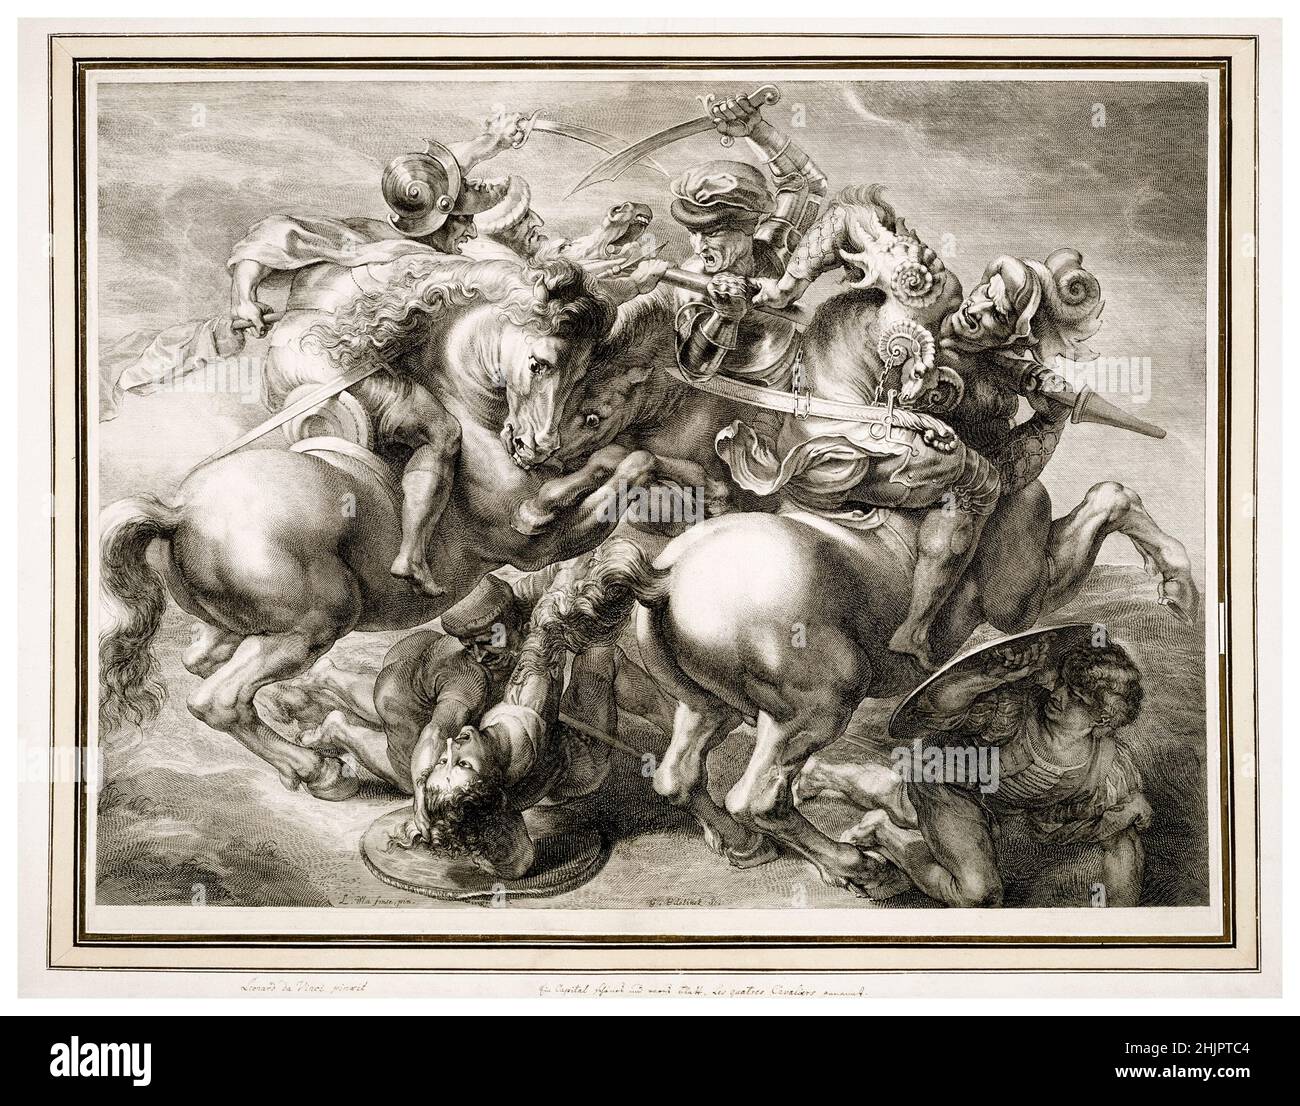 Die Schlacht von vier Reitern (Schlacht von Anghiari), 17th Jahrhundert Stich von Gérard Edelinck nach Leonardo Da Vinci, 1657-1666 Stockfoto